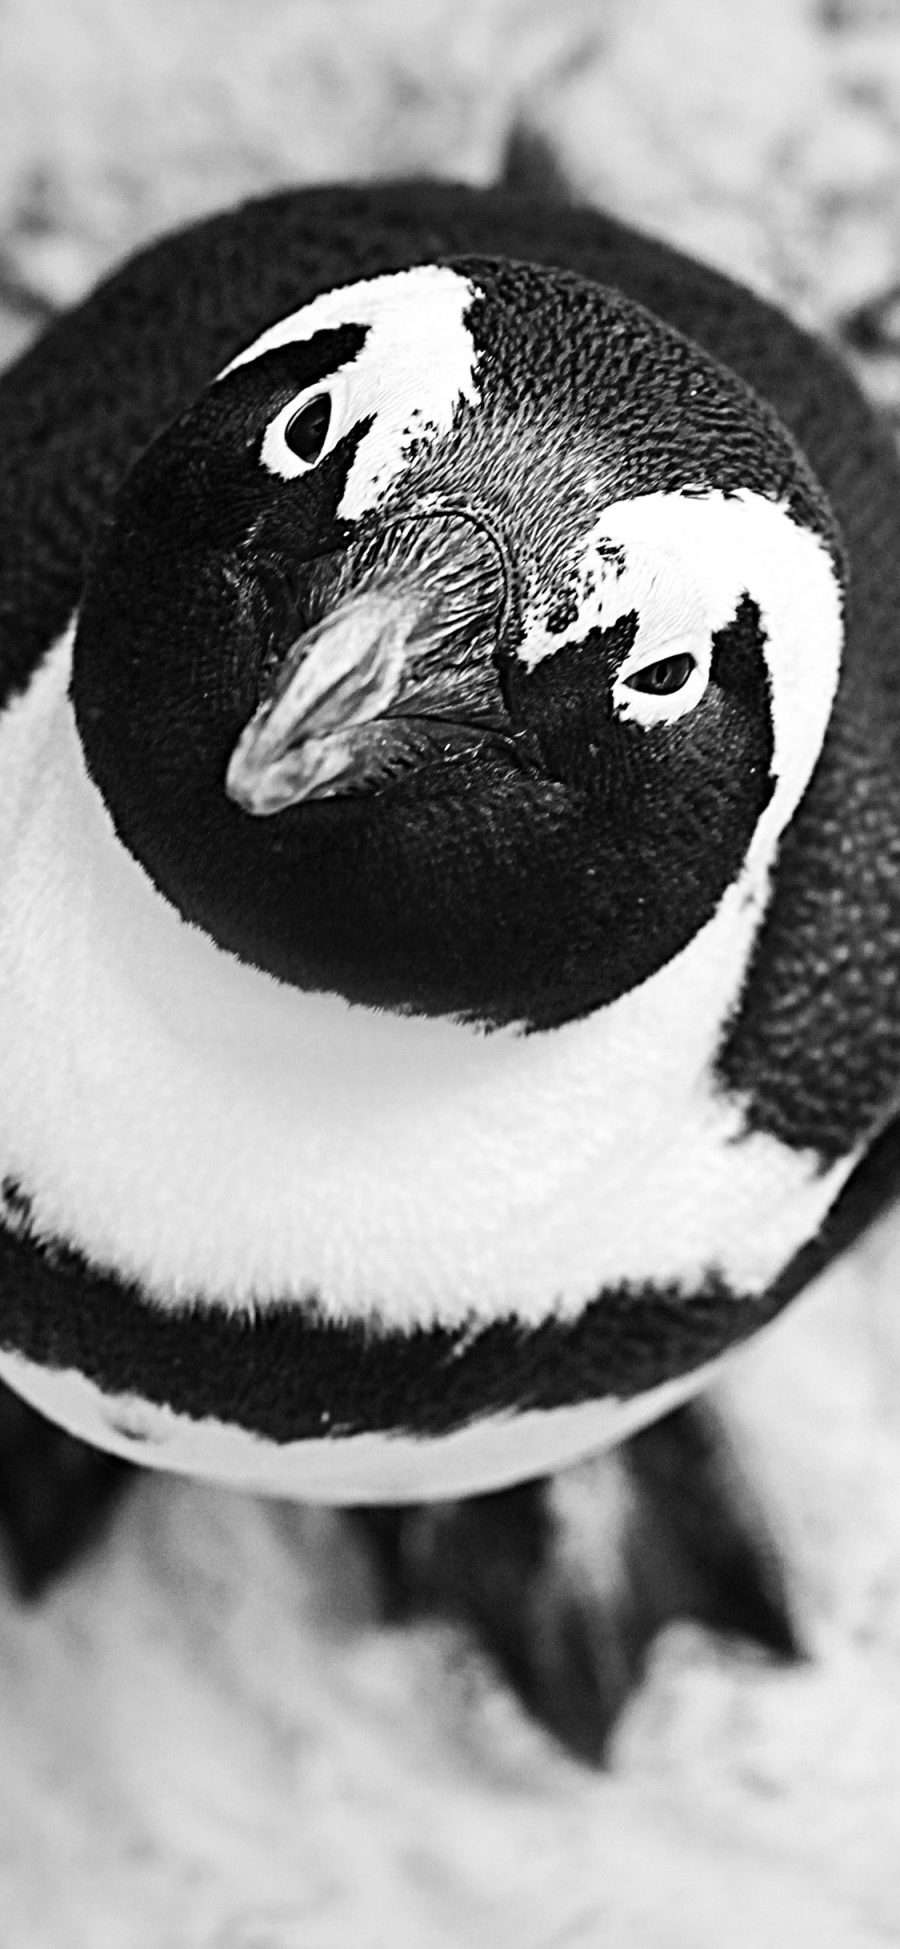 [2436×1125]企鹅 南极 呆萌 黑白 苹果手机壁纸图片